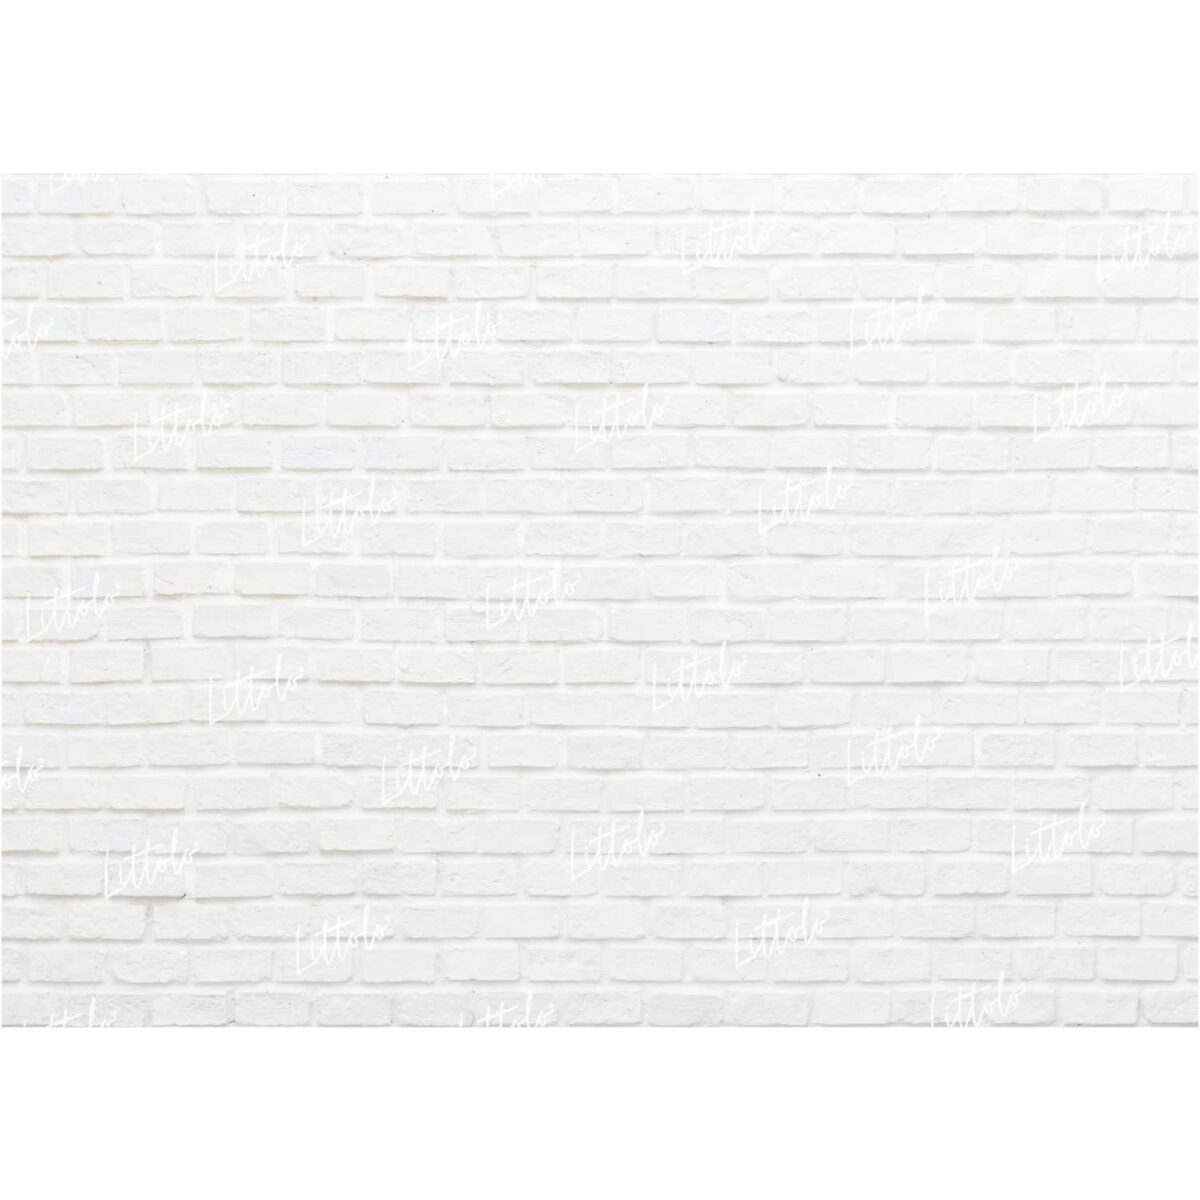 LB0136 White Planks Backdrop